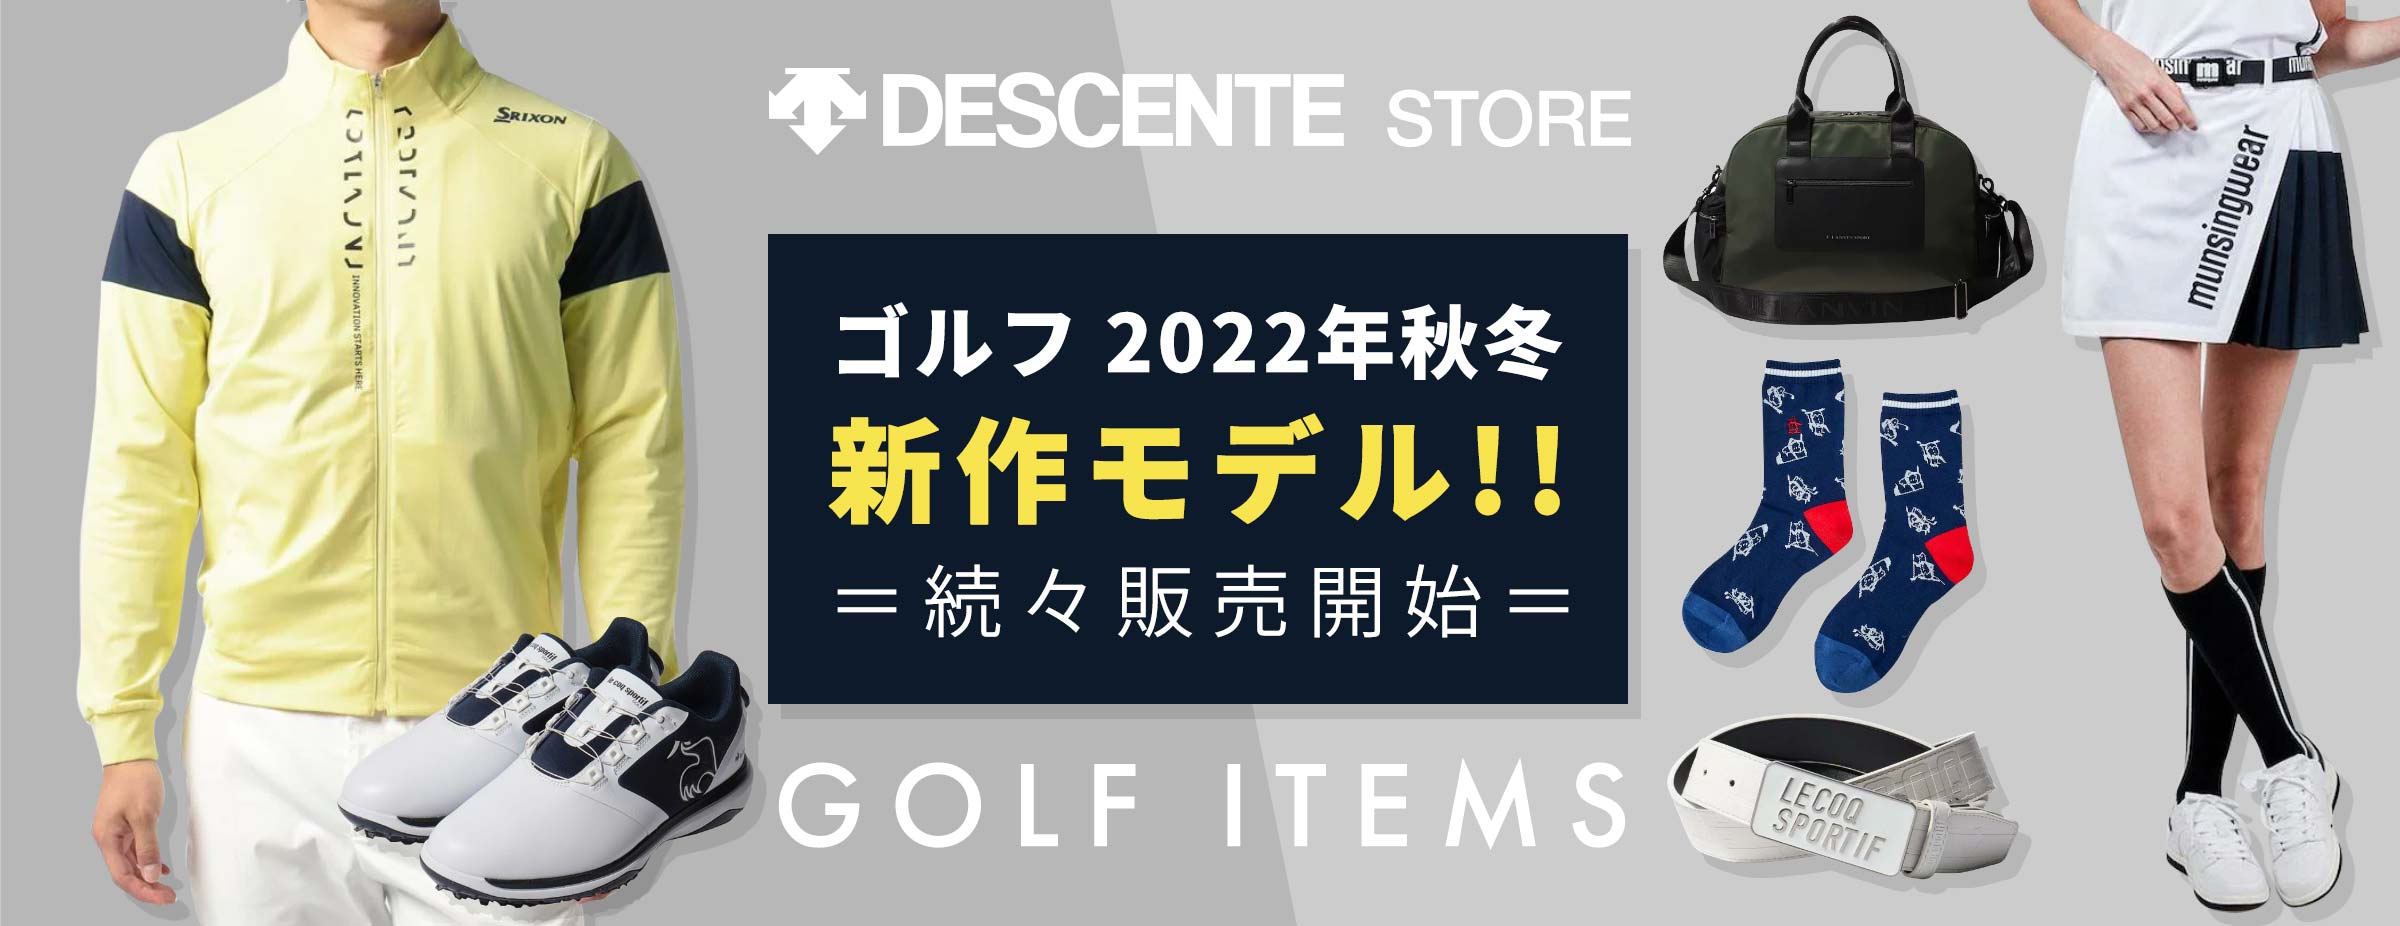 ゴルフ 2022年秋冬モデル 続々販売開始!